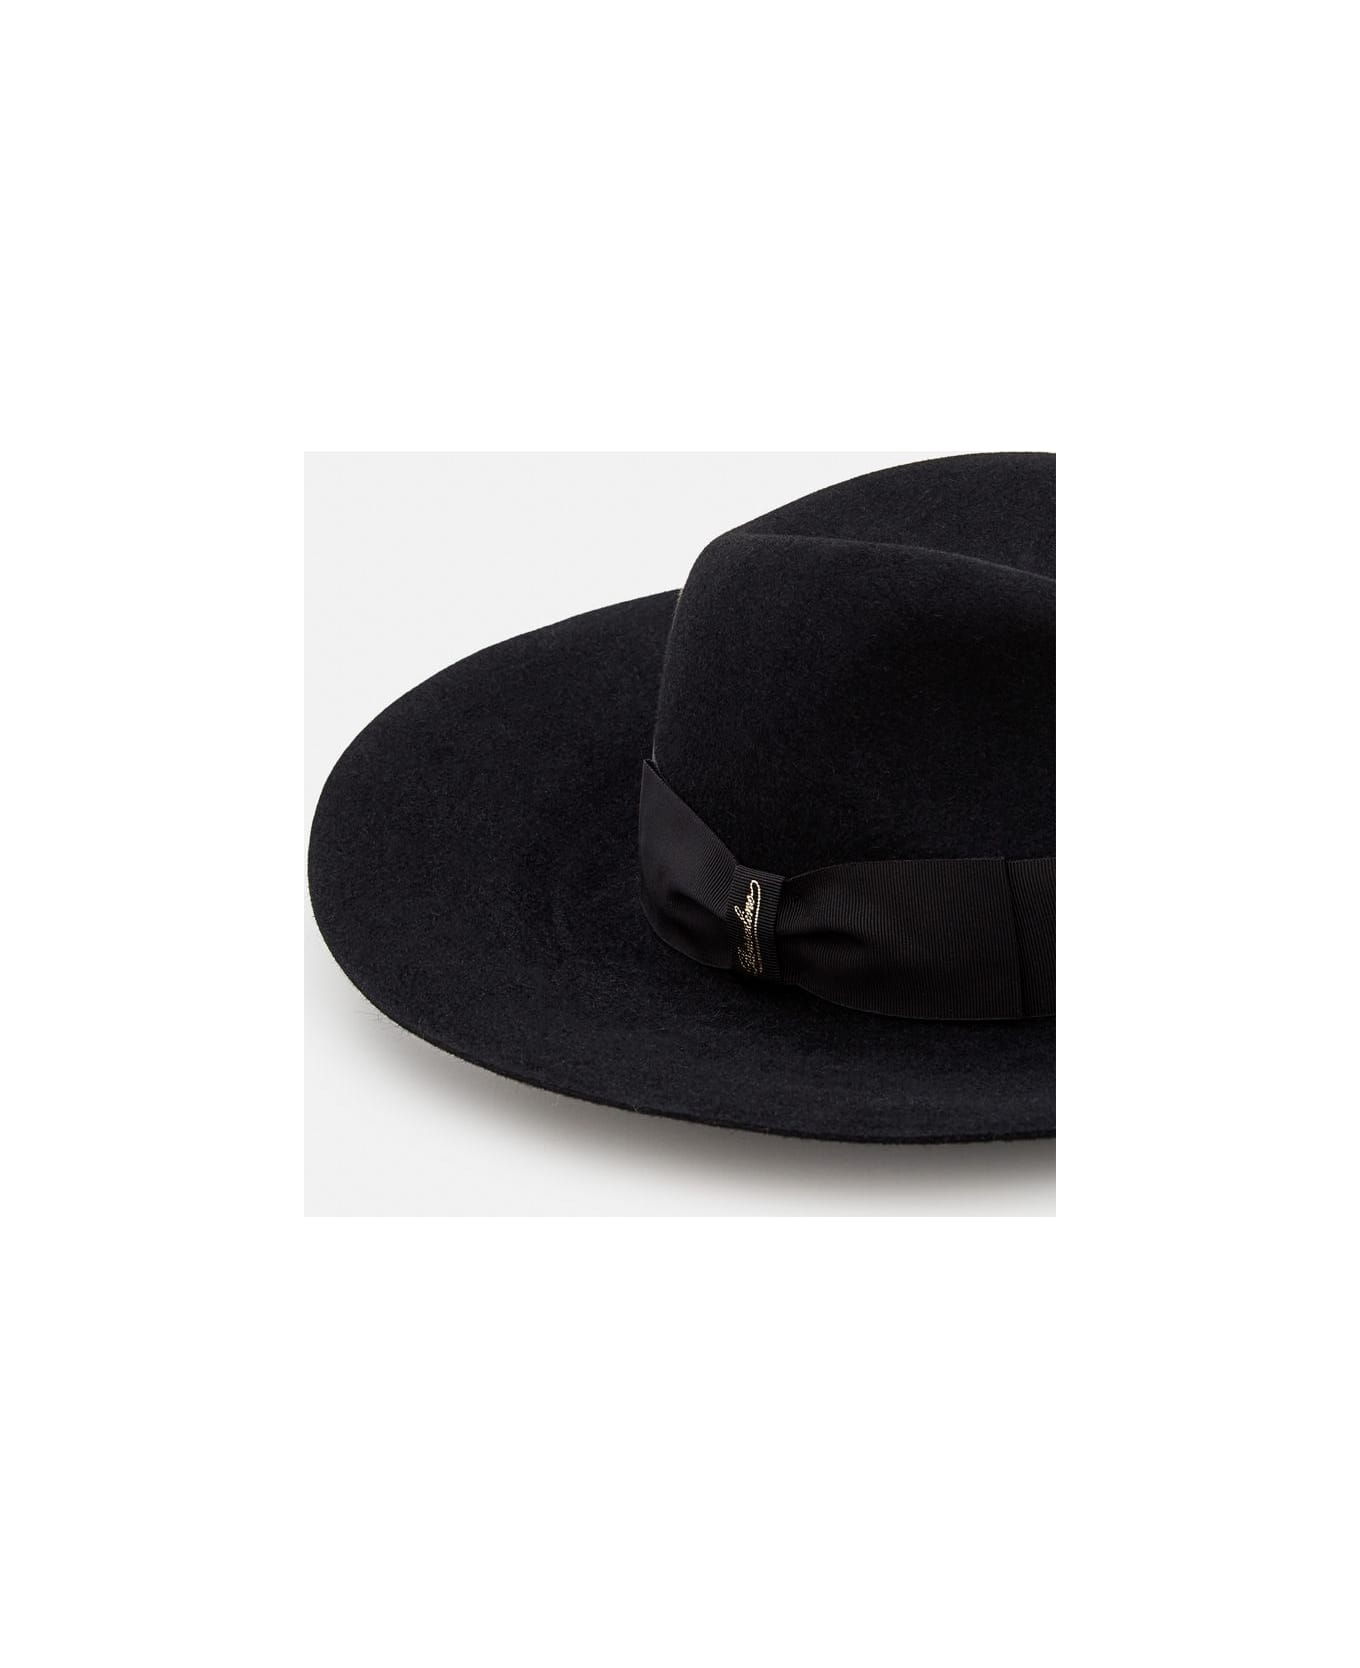 Borsalino Sophie Brushed Felt Large Brim Hat - Black